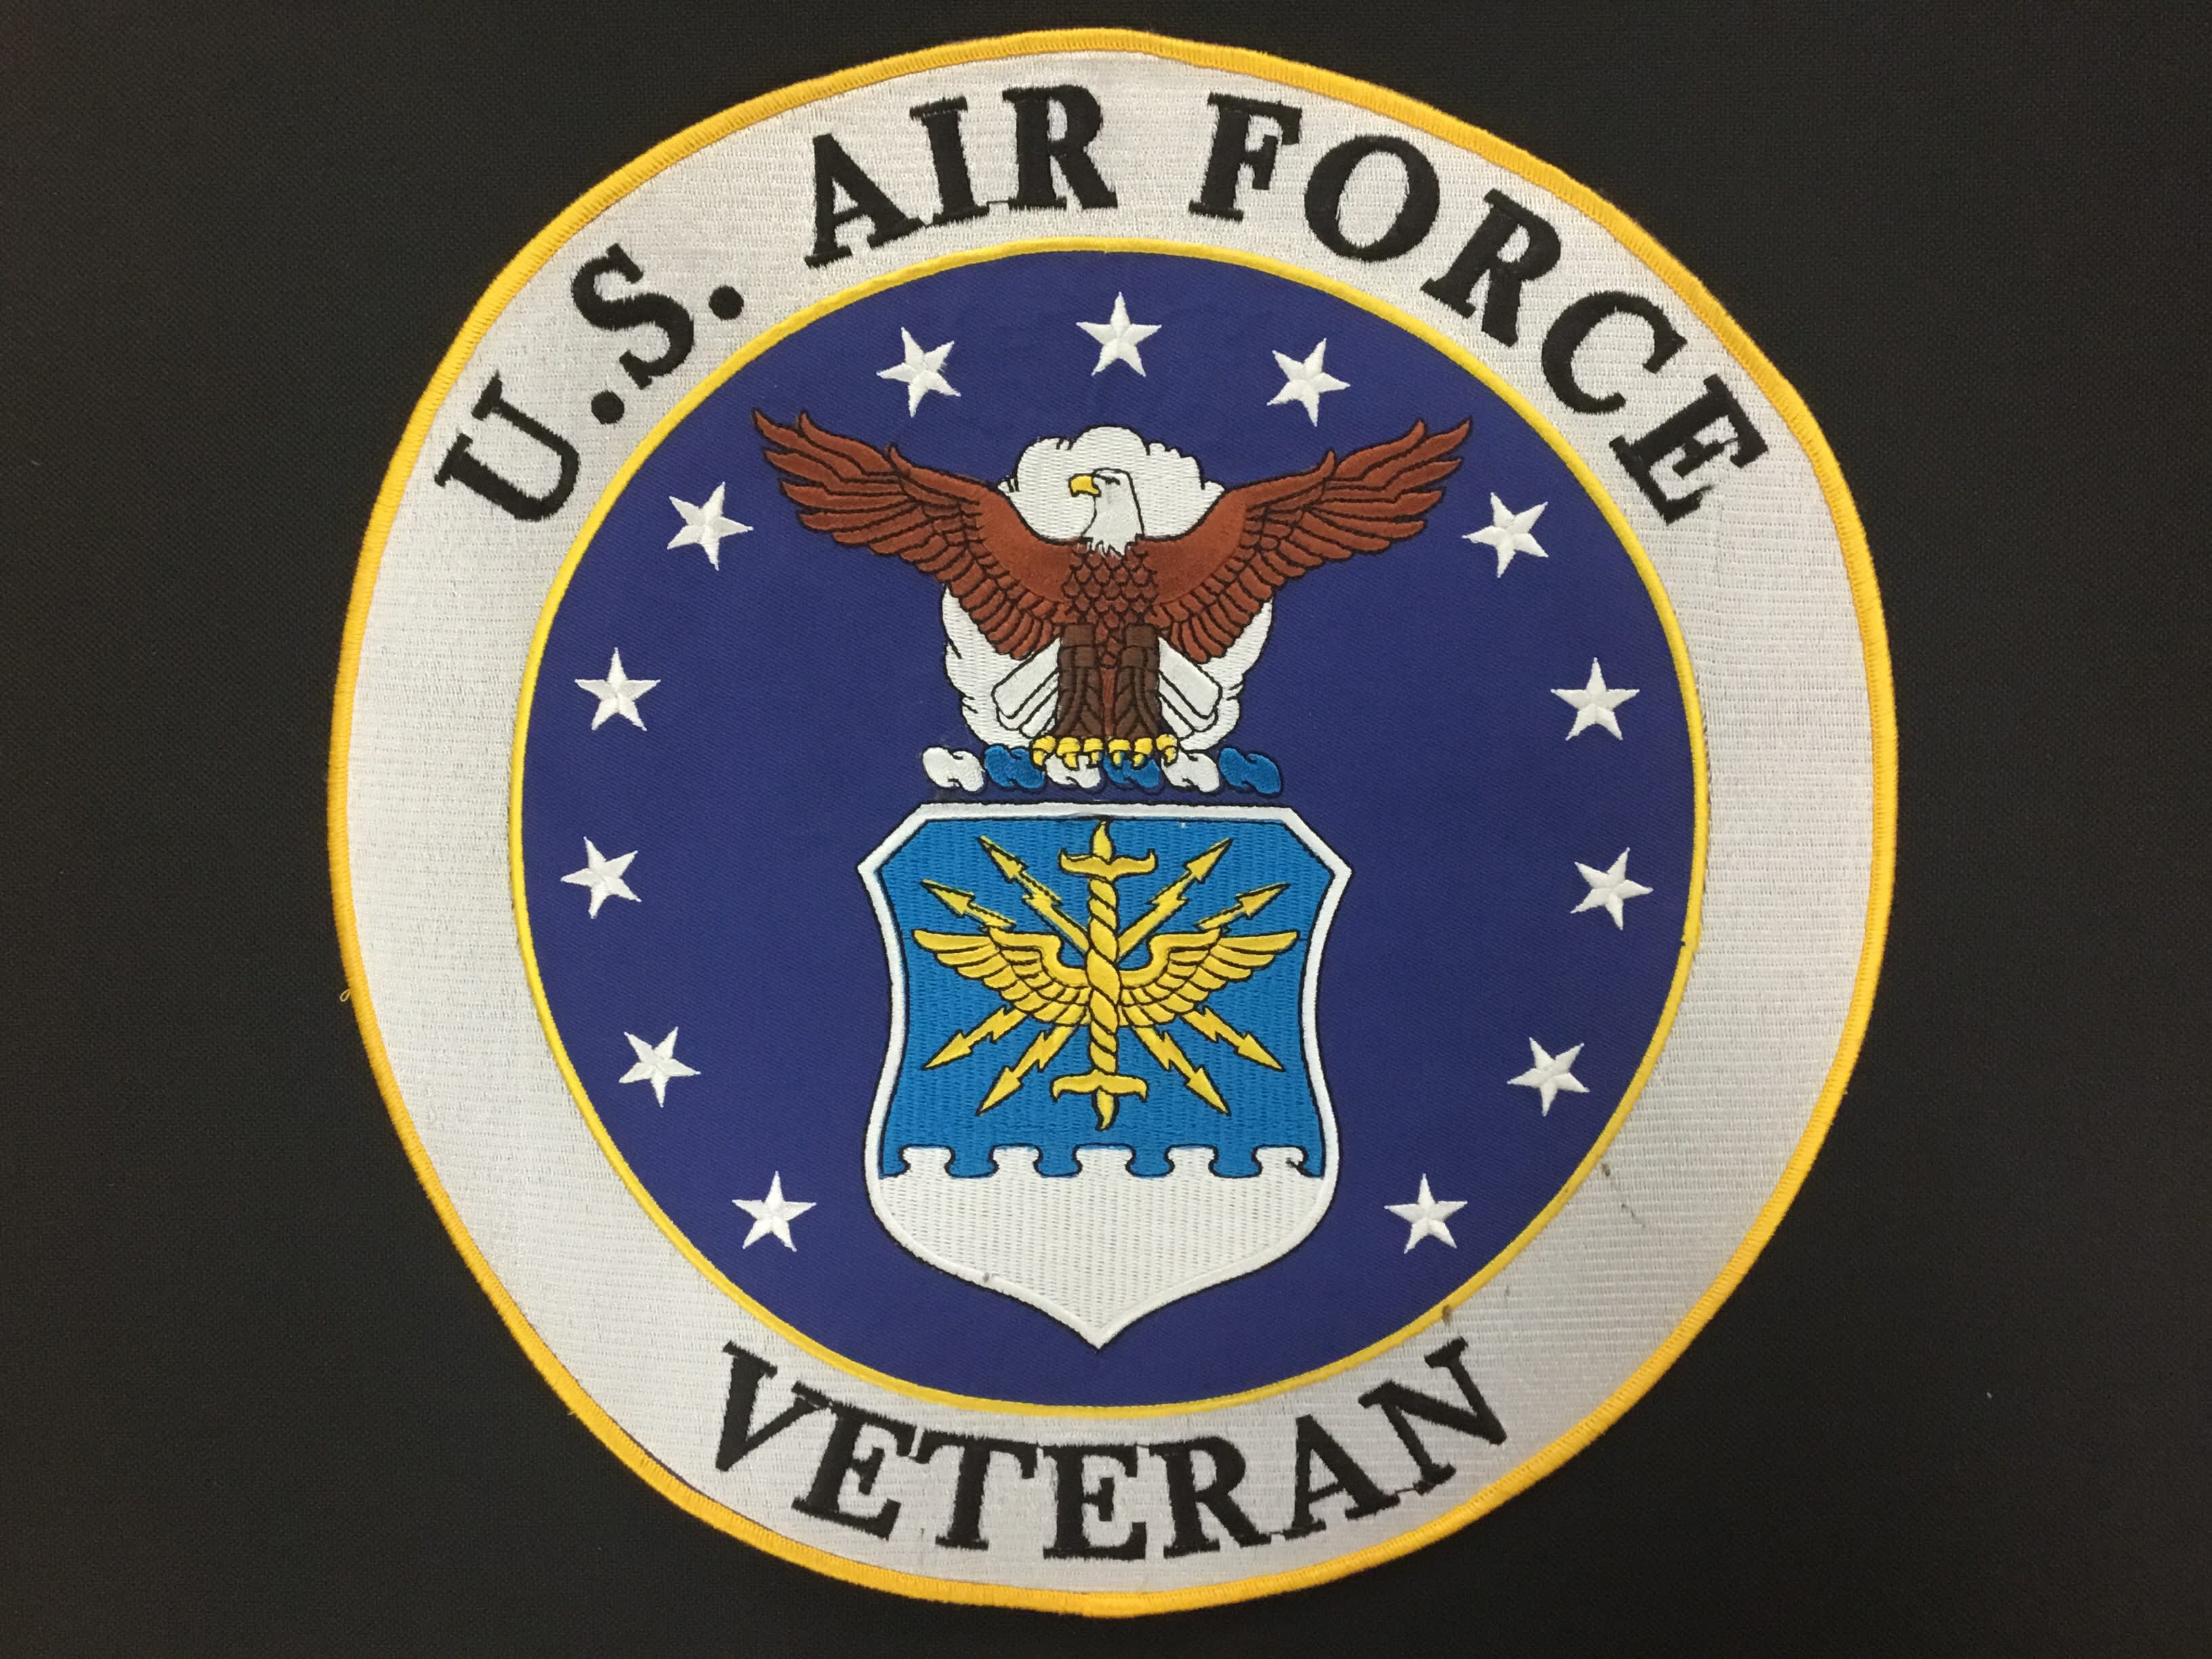 air force veteran apparel